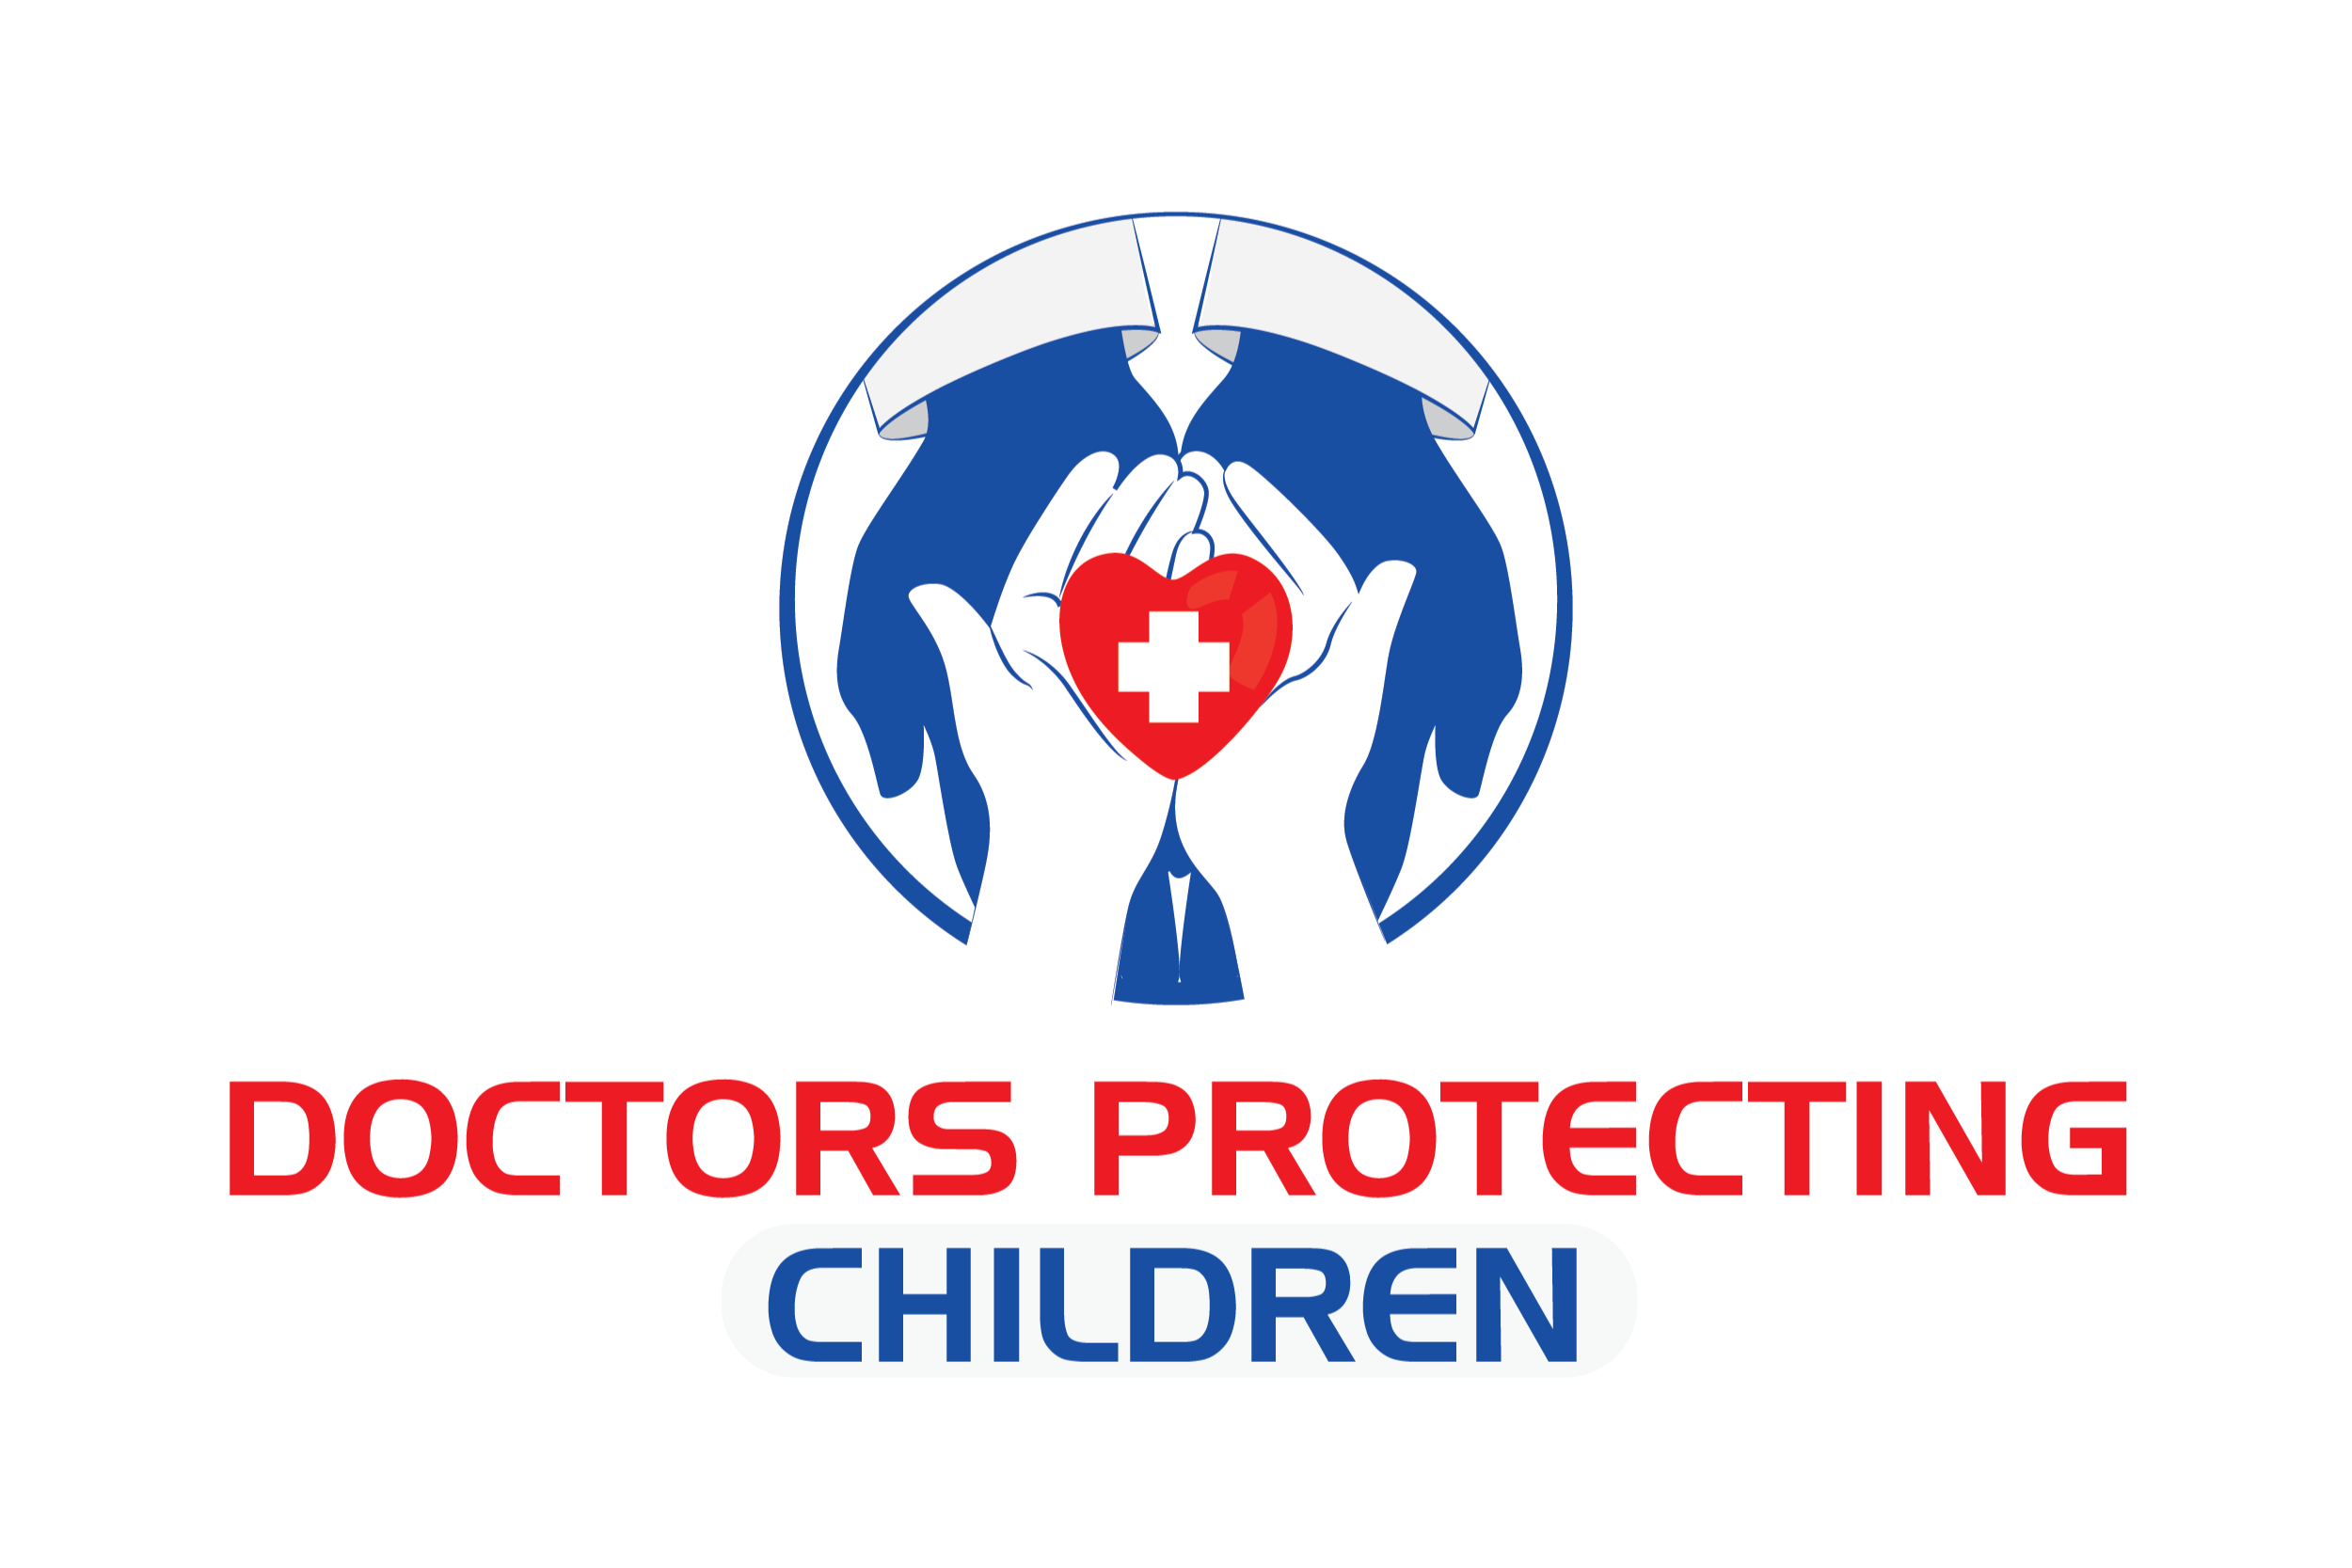 doctorsprotectingchildren.org